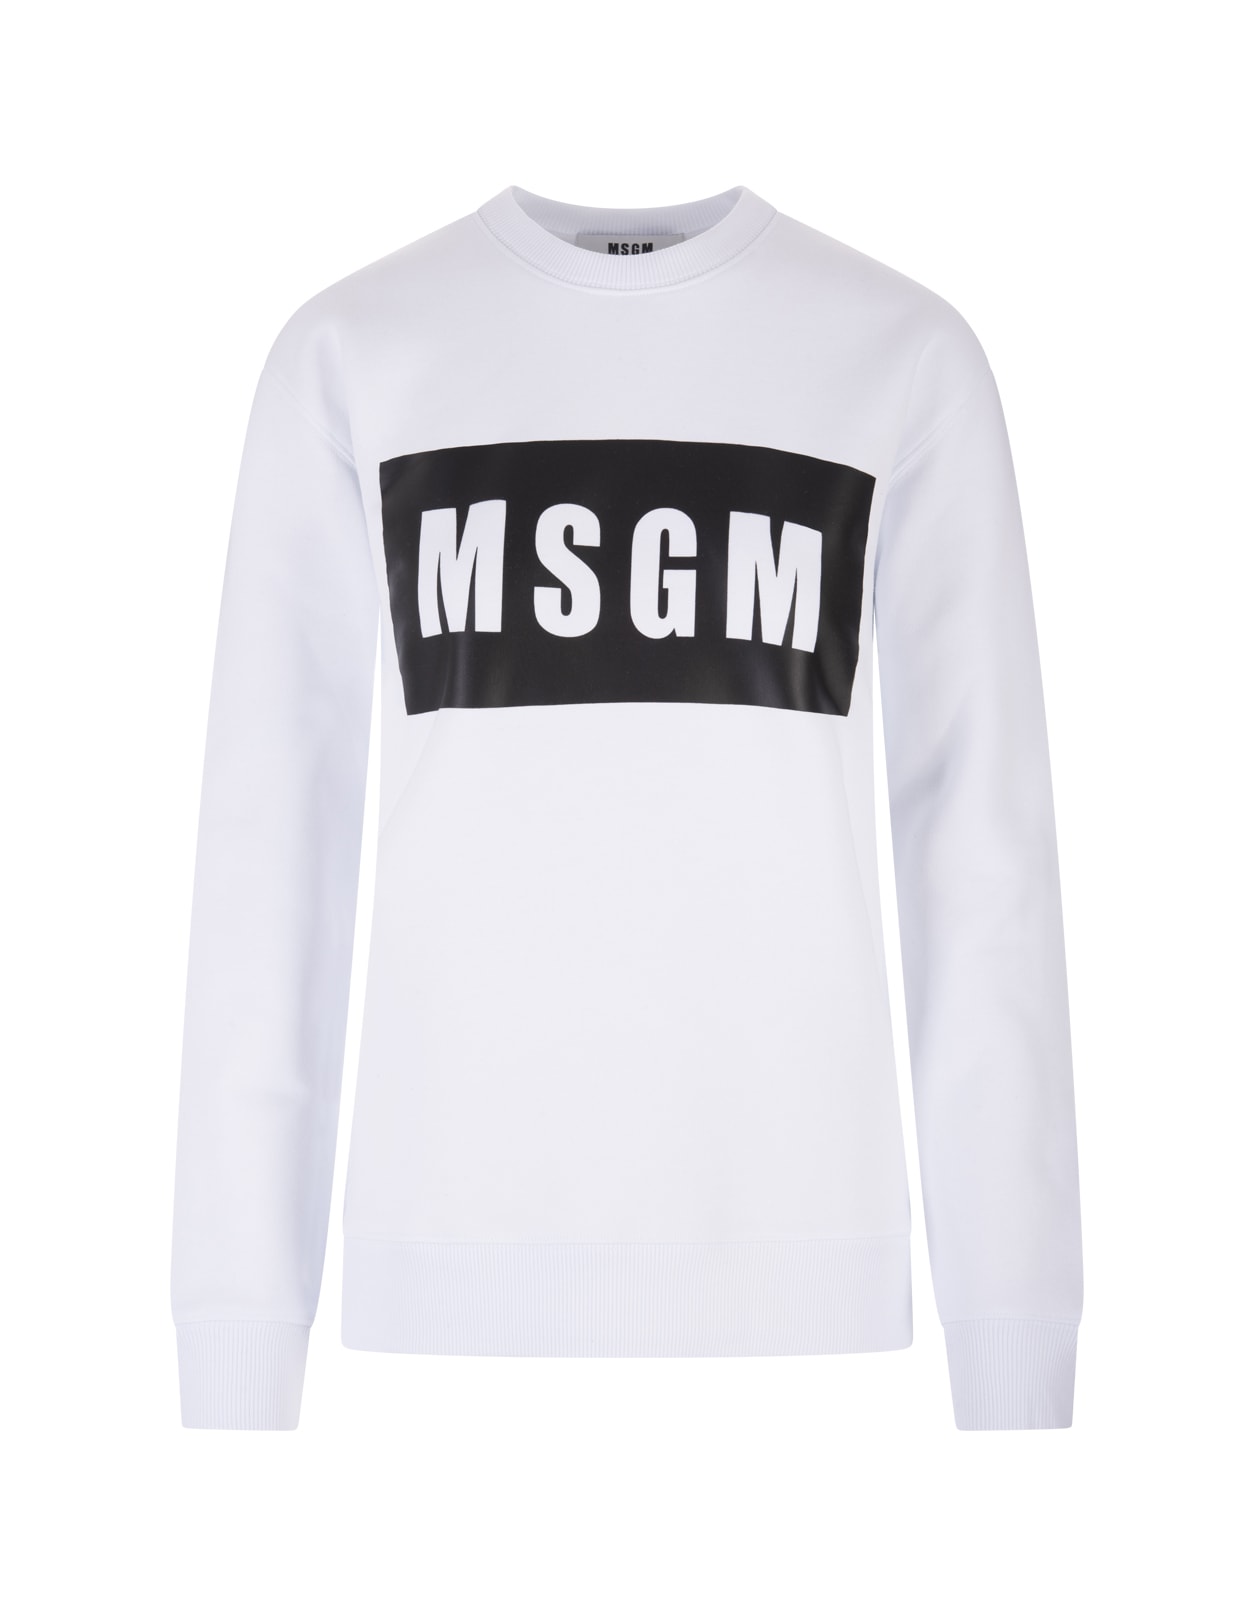 MSGM Woman White Sweatshirt With Black Logo Box